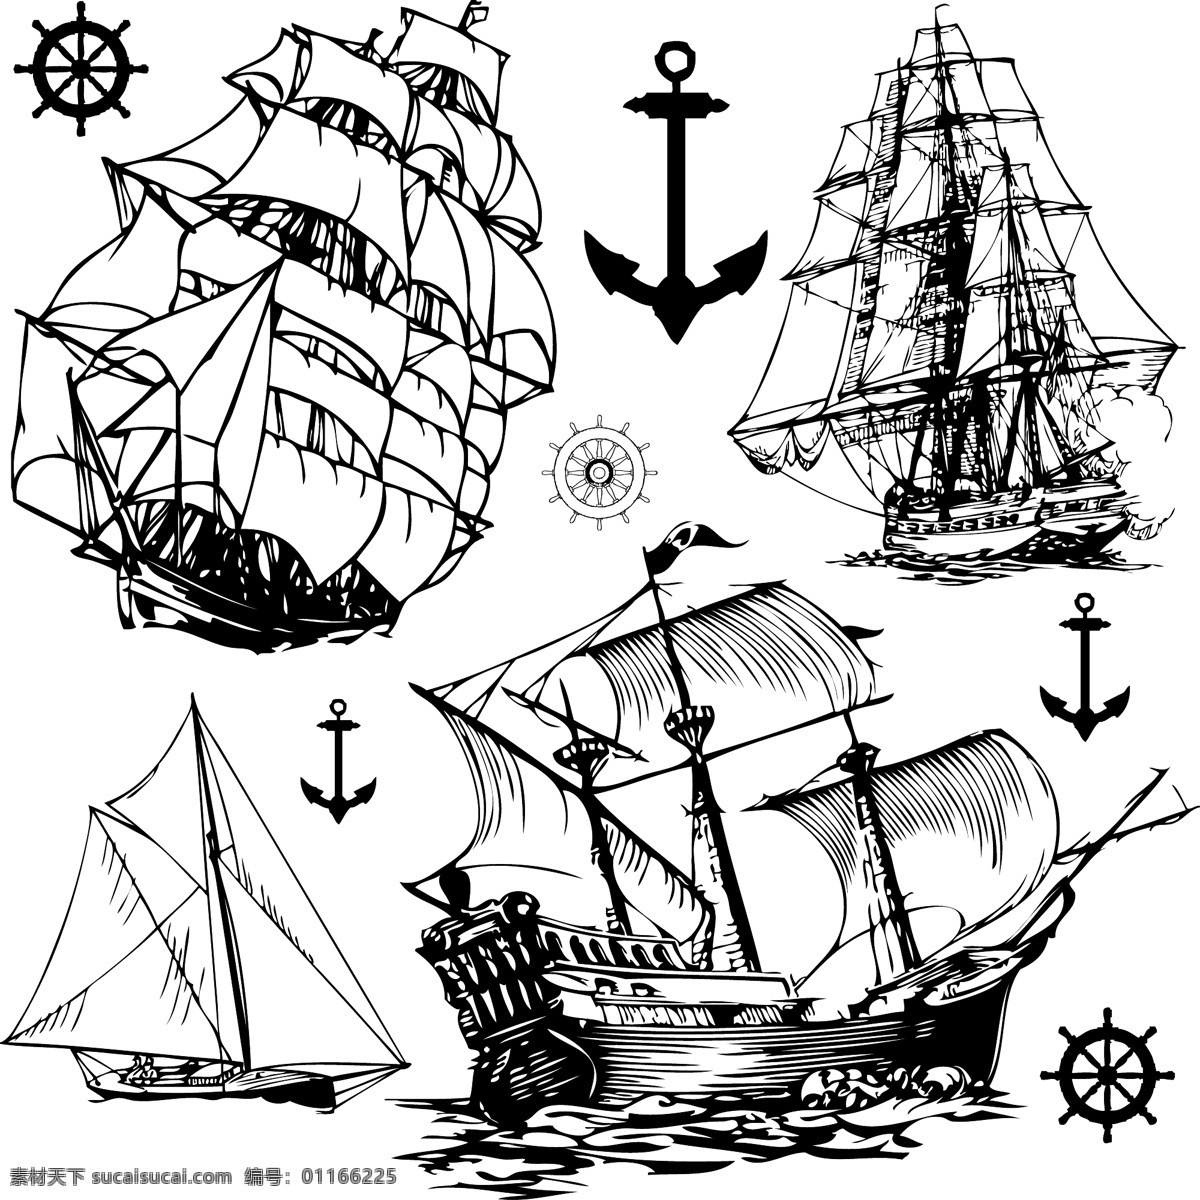 轮盘 帆船 矢量帆船 海盗船 锚 帆船绳索 黑白帆船 舵手 轮舵 零售素材